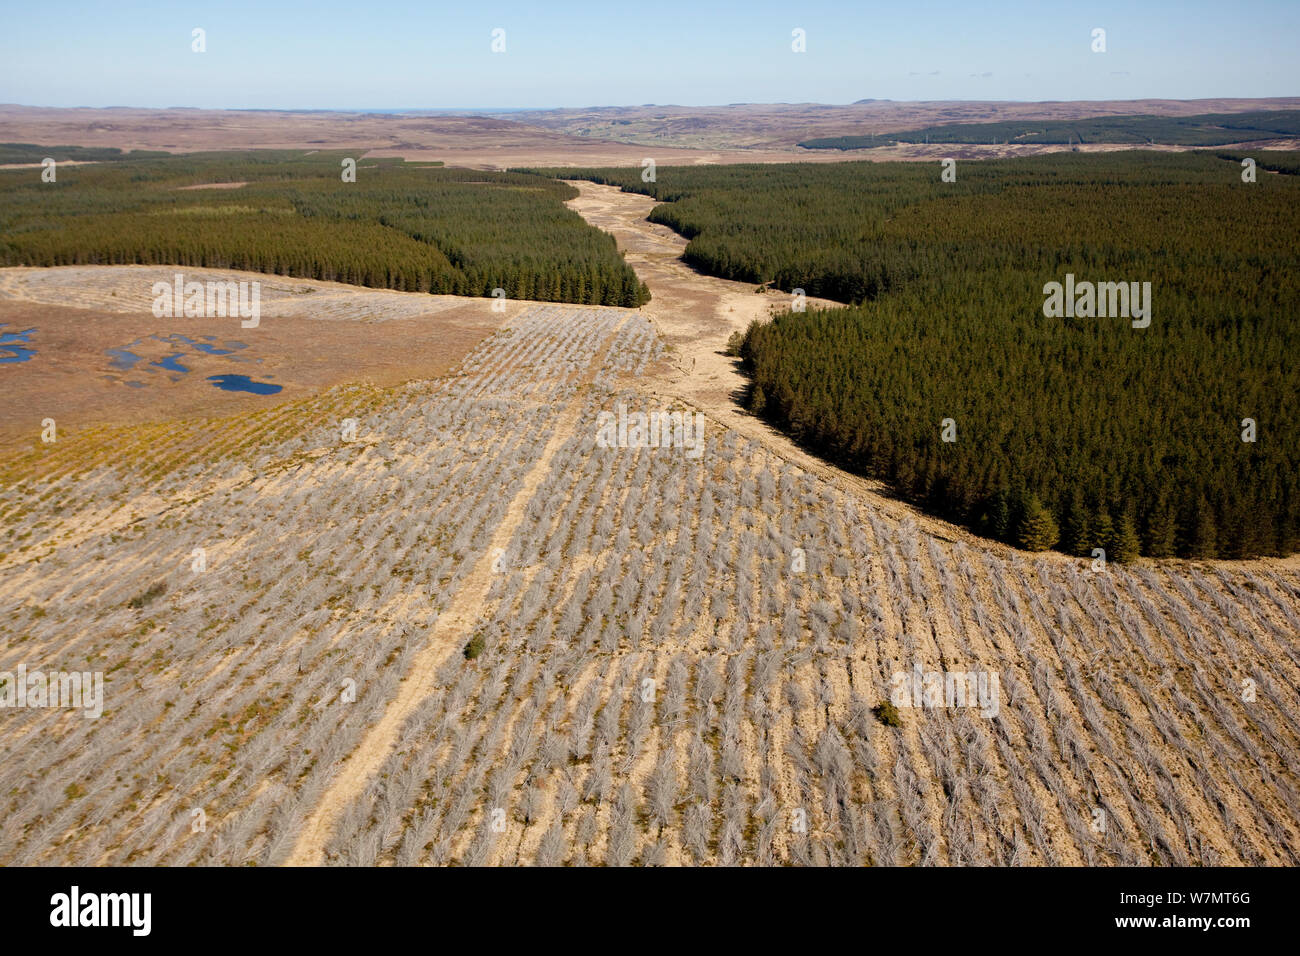 Vista aerea di blocchi di piantagioni forestali piantate su blanket bog, con aree di abbattimento selettivo, Forsinard, Caithness in Scozia, Regno Unito, maggio. Foto Stock